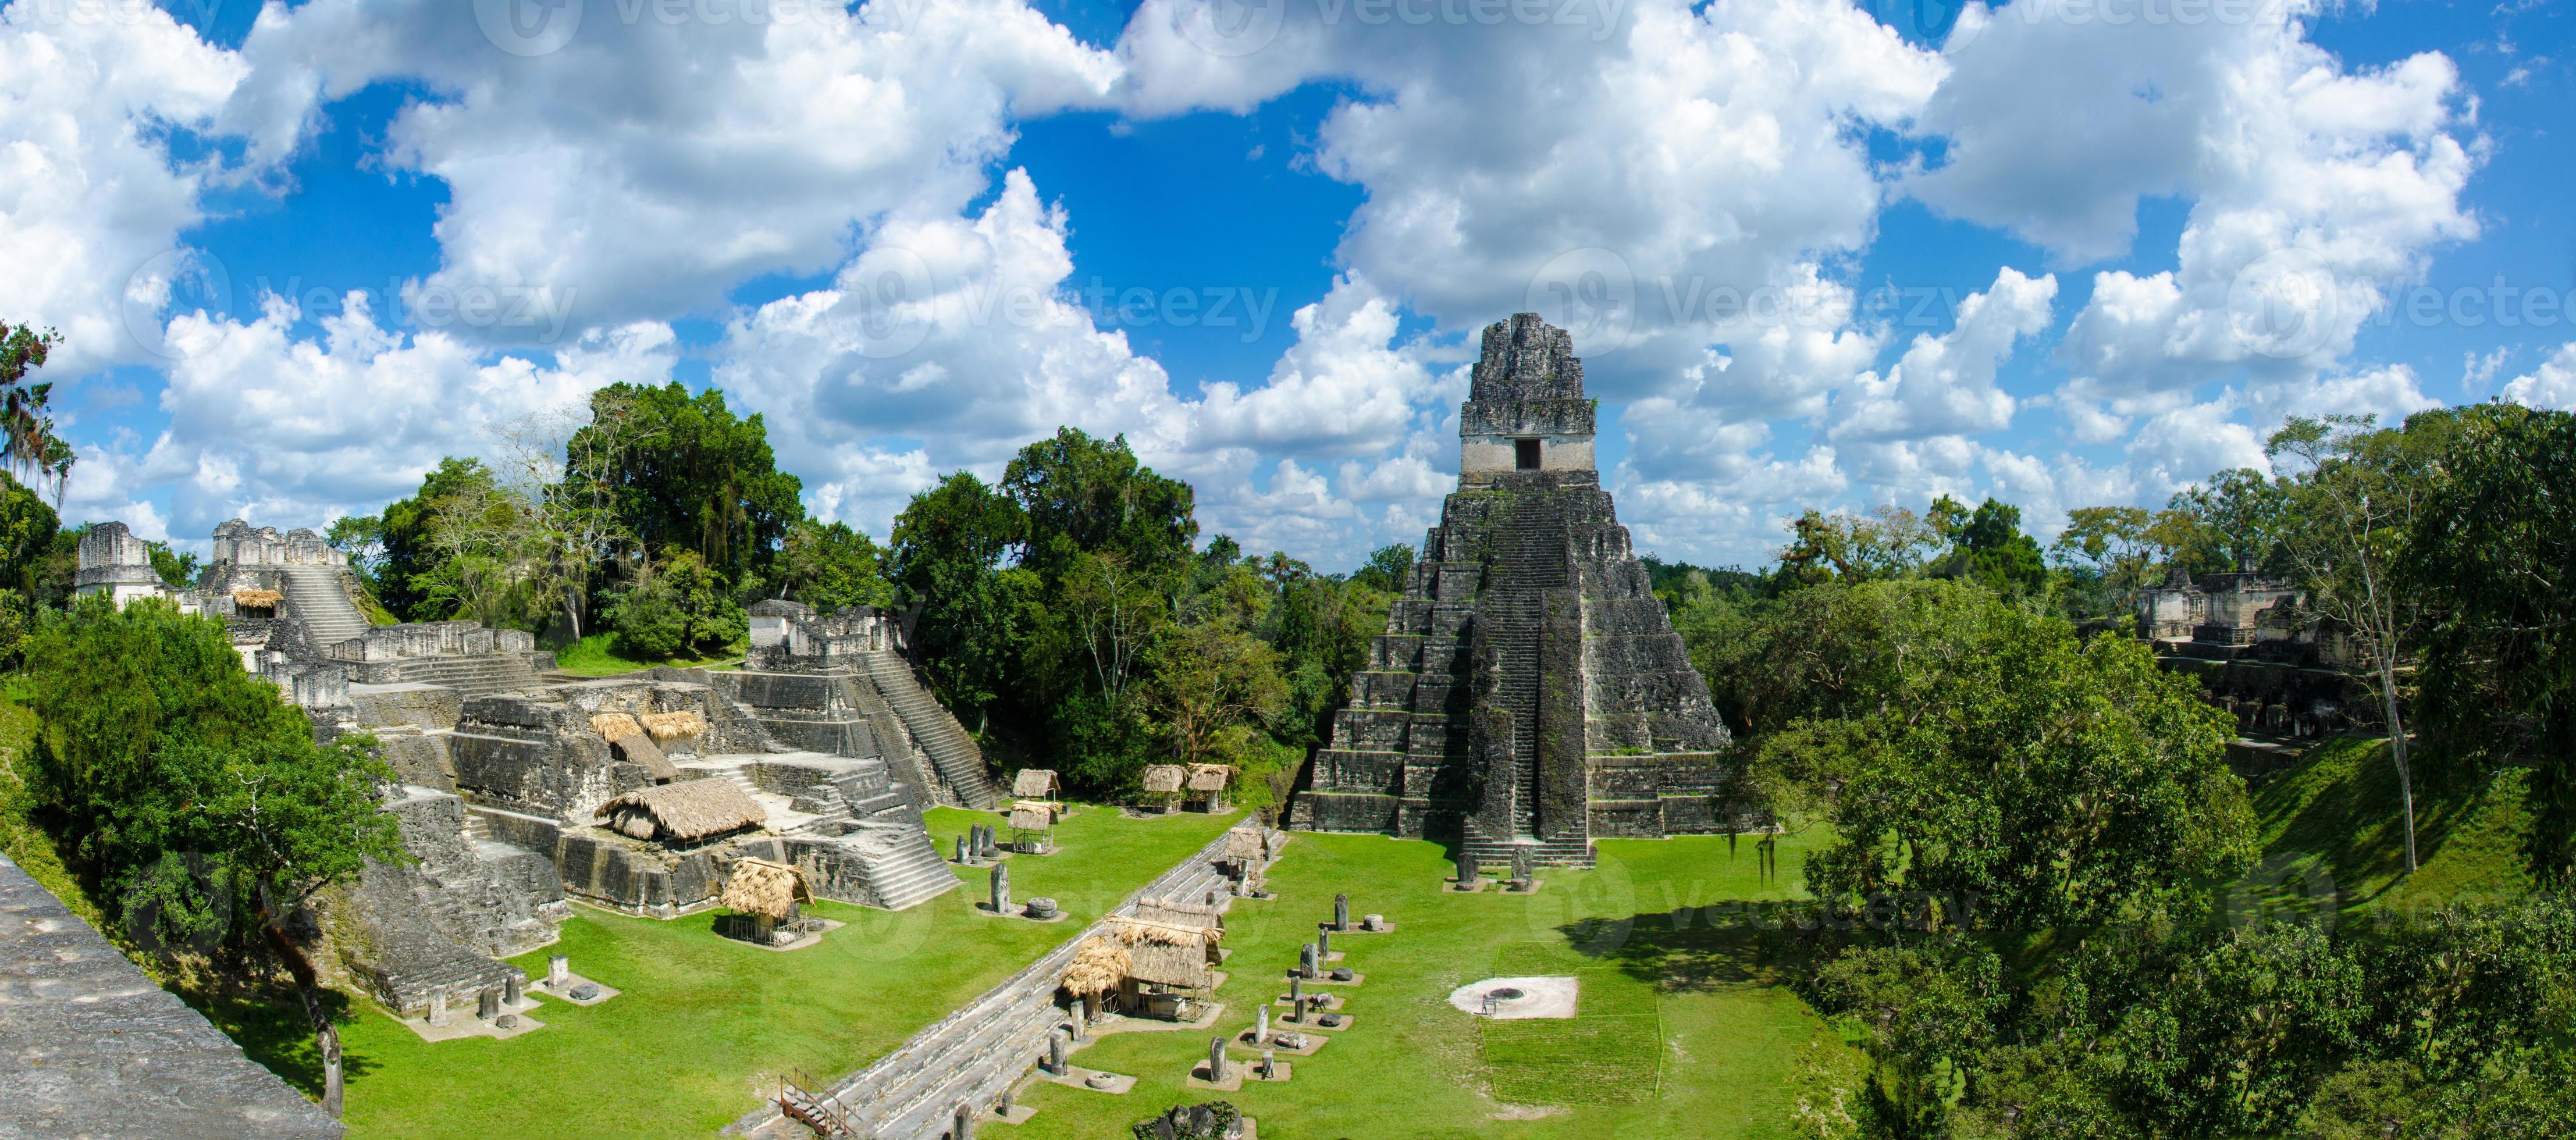 Panorama Tikal  Ruins and pyramids photo